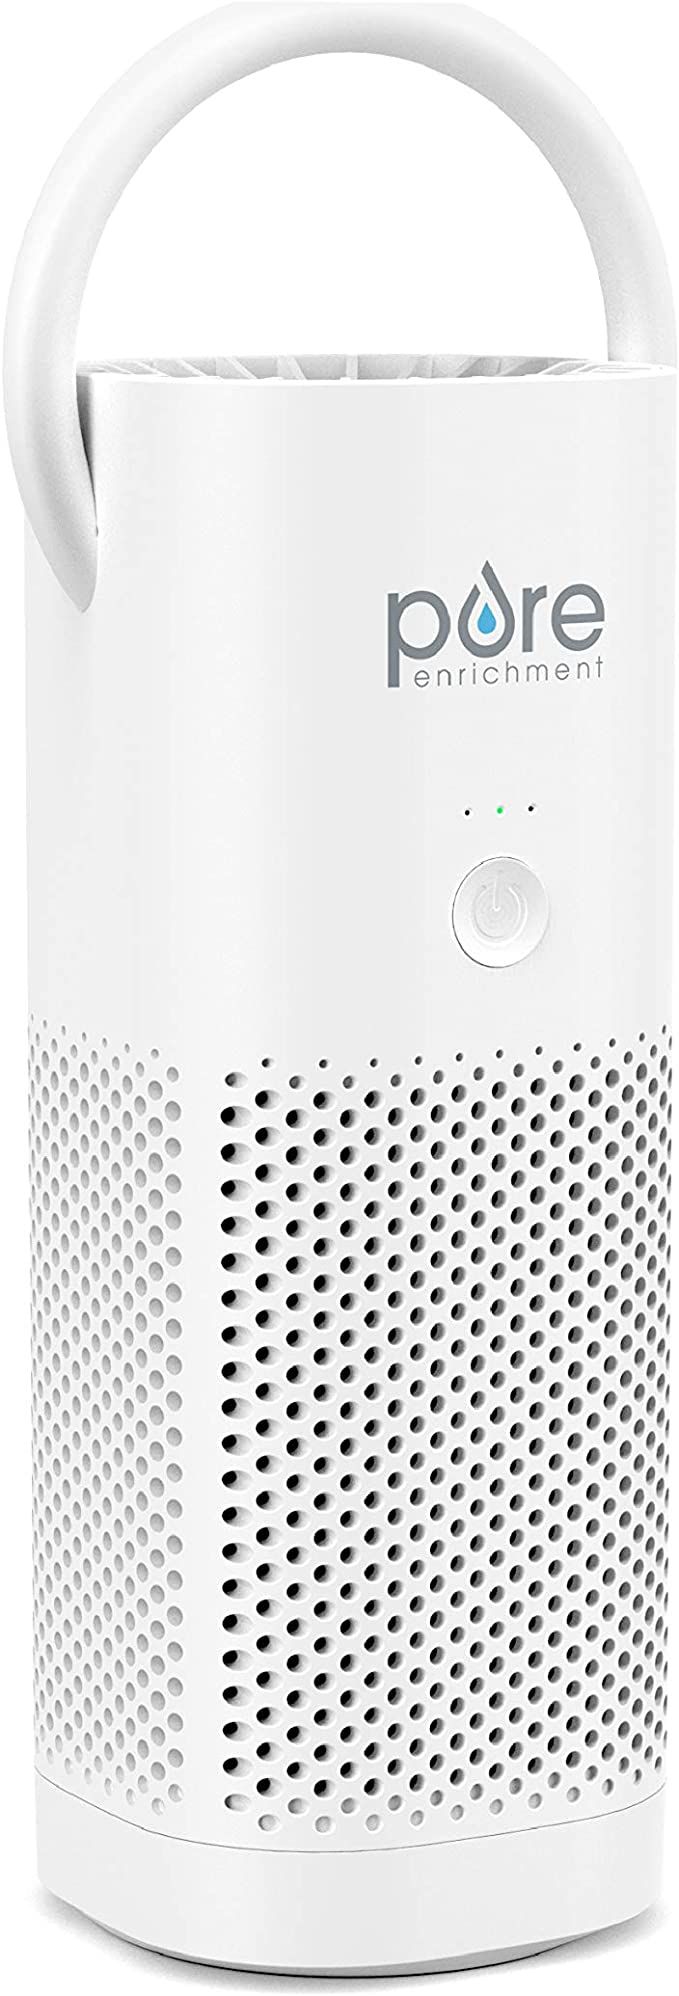 Pure Enrichment PureZone Mini Portable Air Purifier - True HEPA Filter Cleans Air, Helps Alleviat... | Amazon (US)